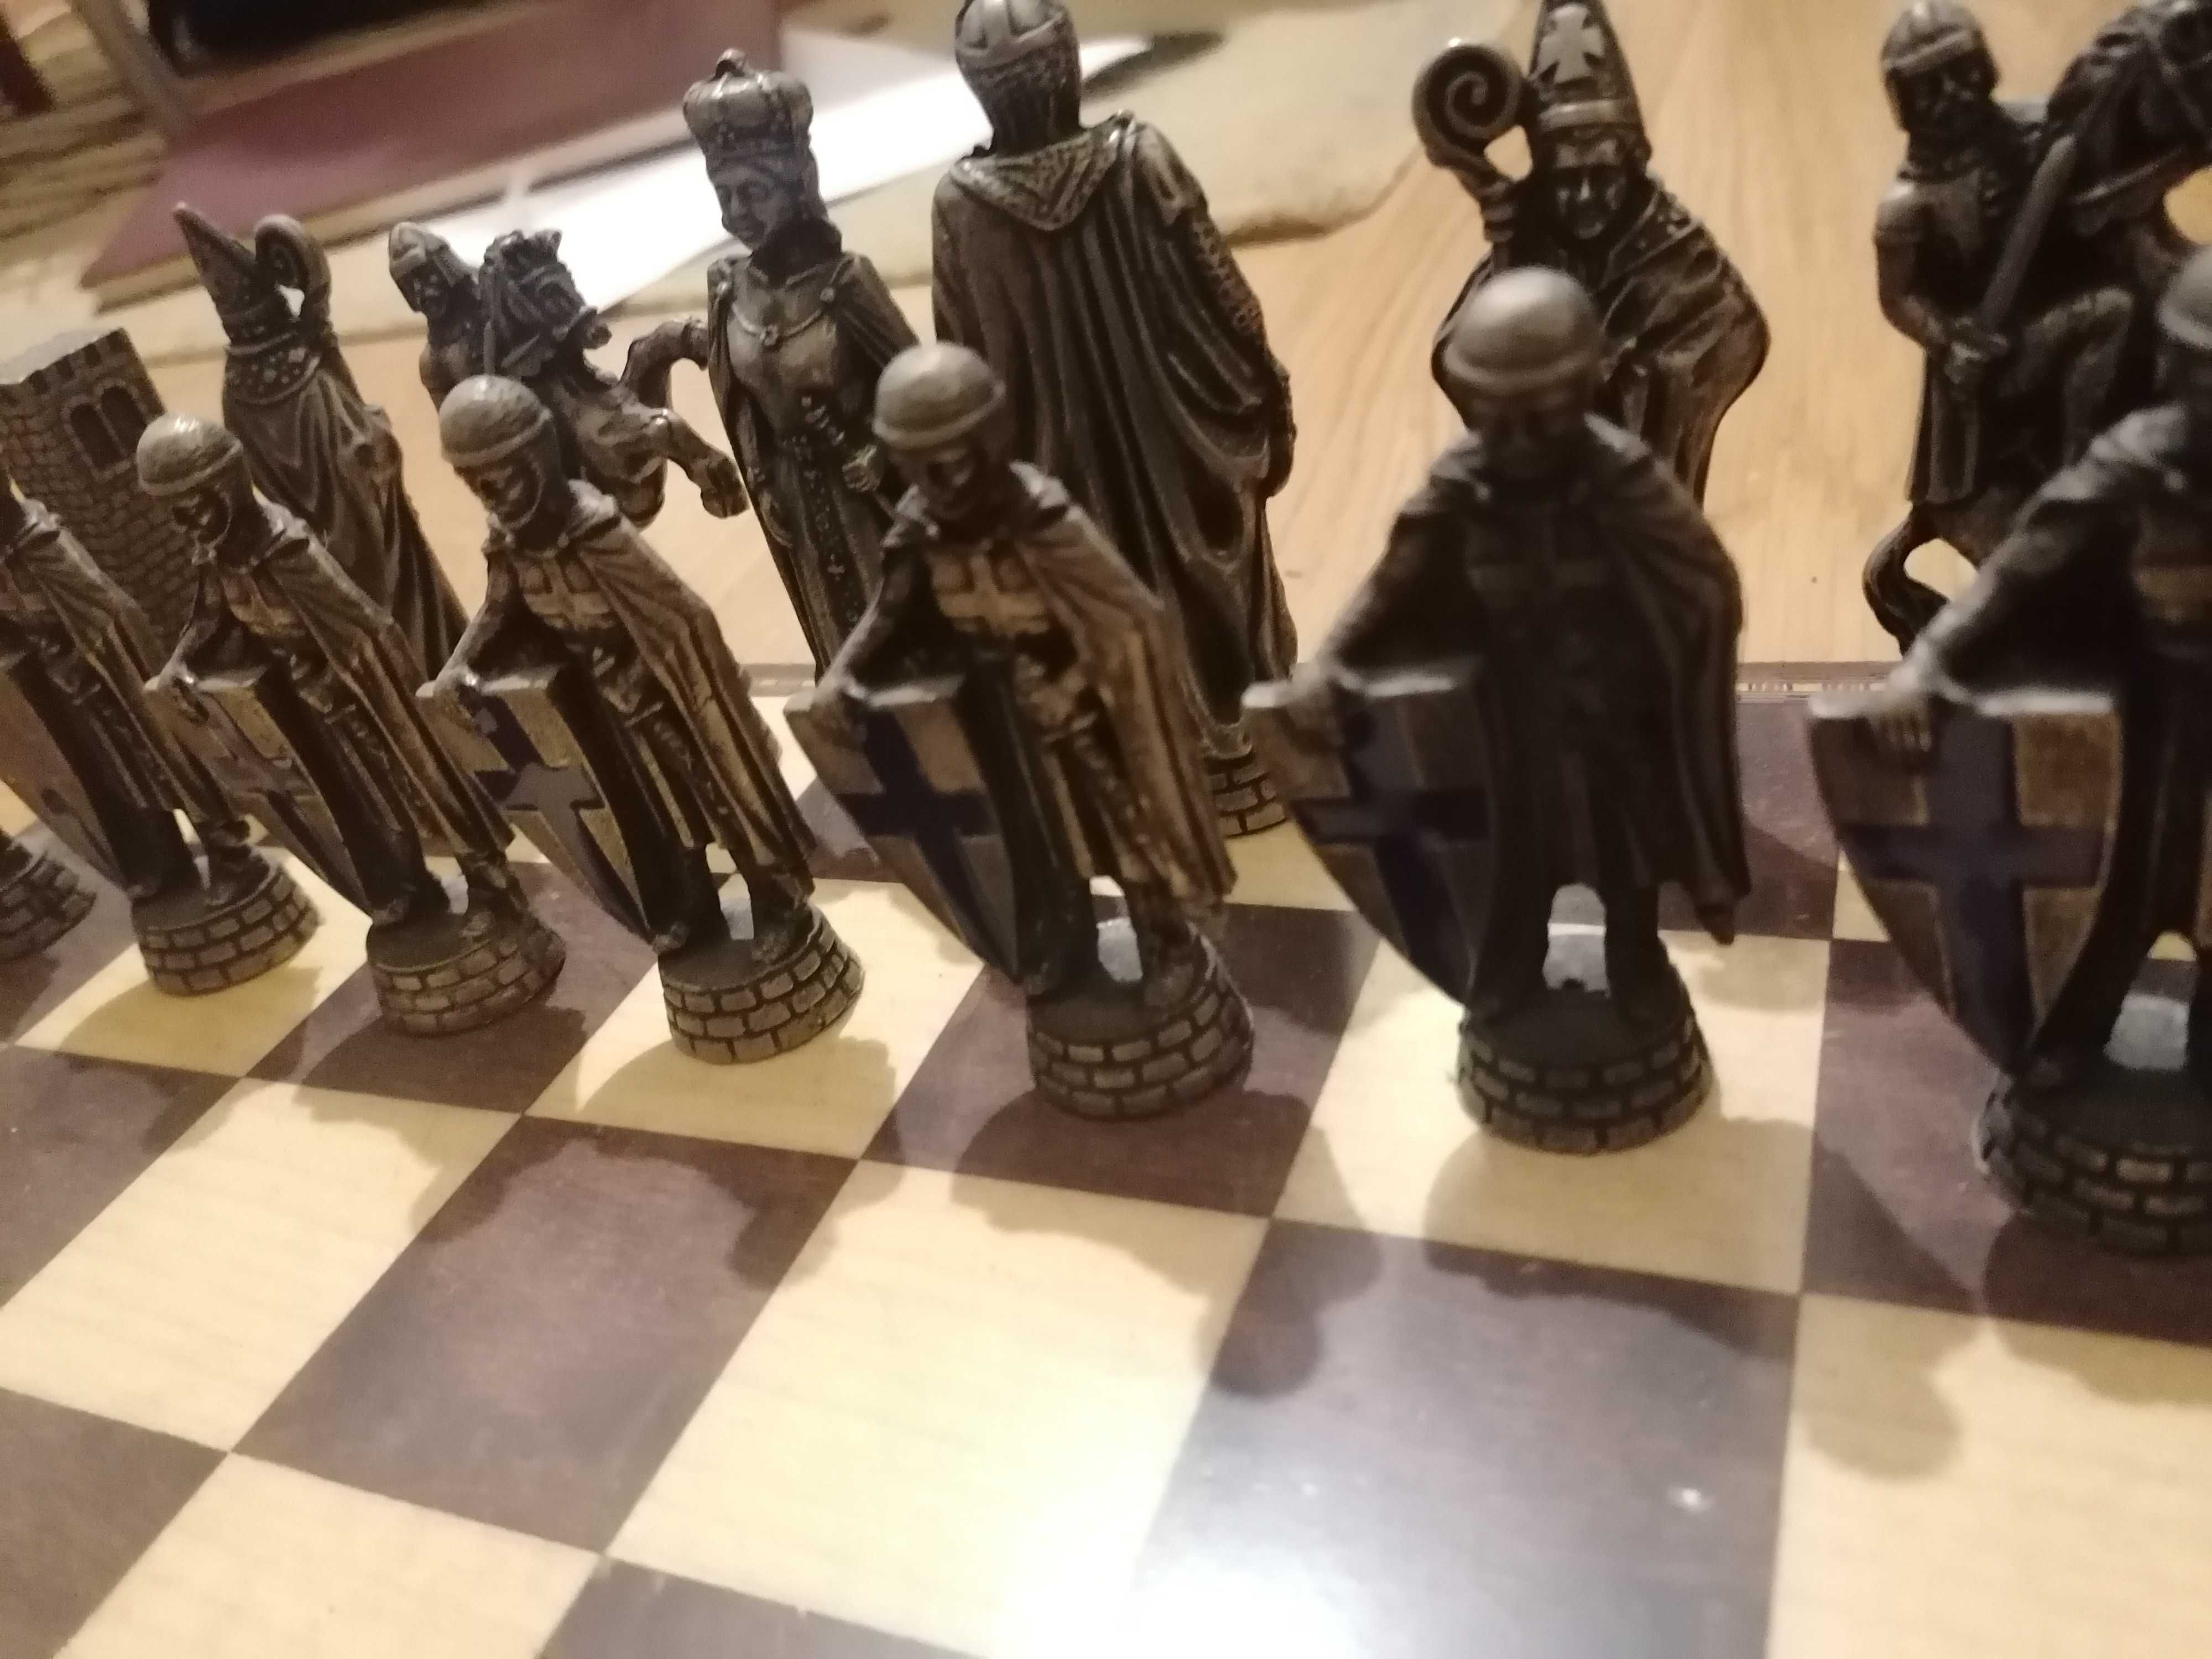  Como aprender a jogar xadrez (Portuguese Edition